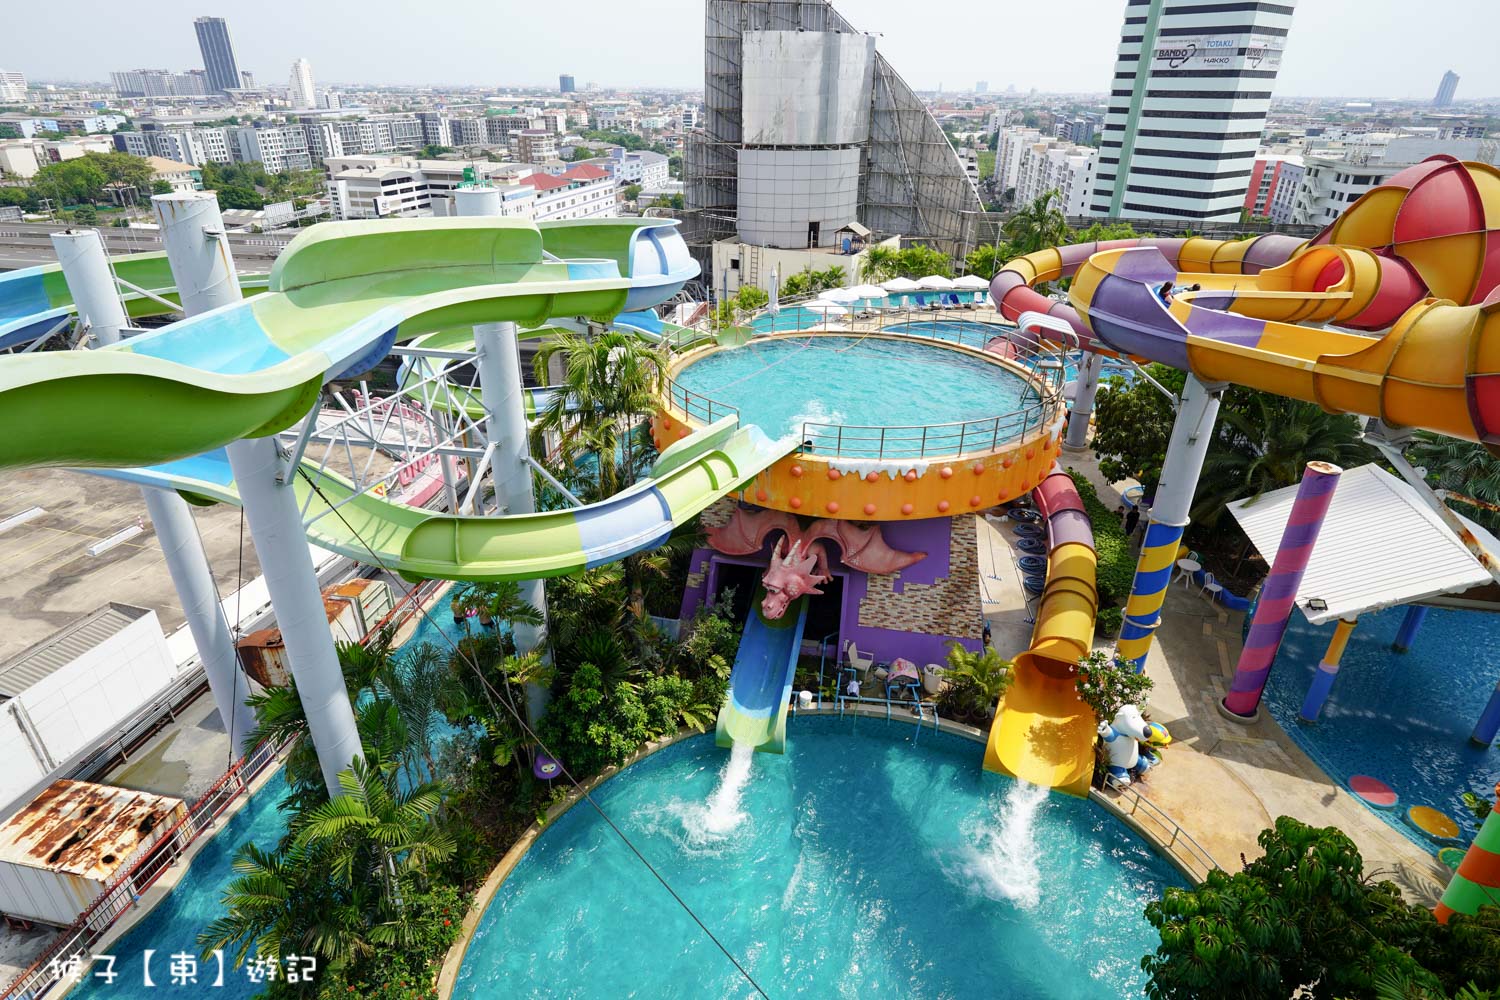 延伸閱讀：[泰國] Pororo Aqua Park Bangkok 曼谷高空水上樂園 門票介紹 旋轉滑水道 消暑好玩 適合全家大小一起玩